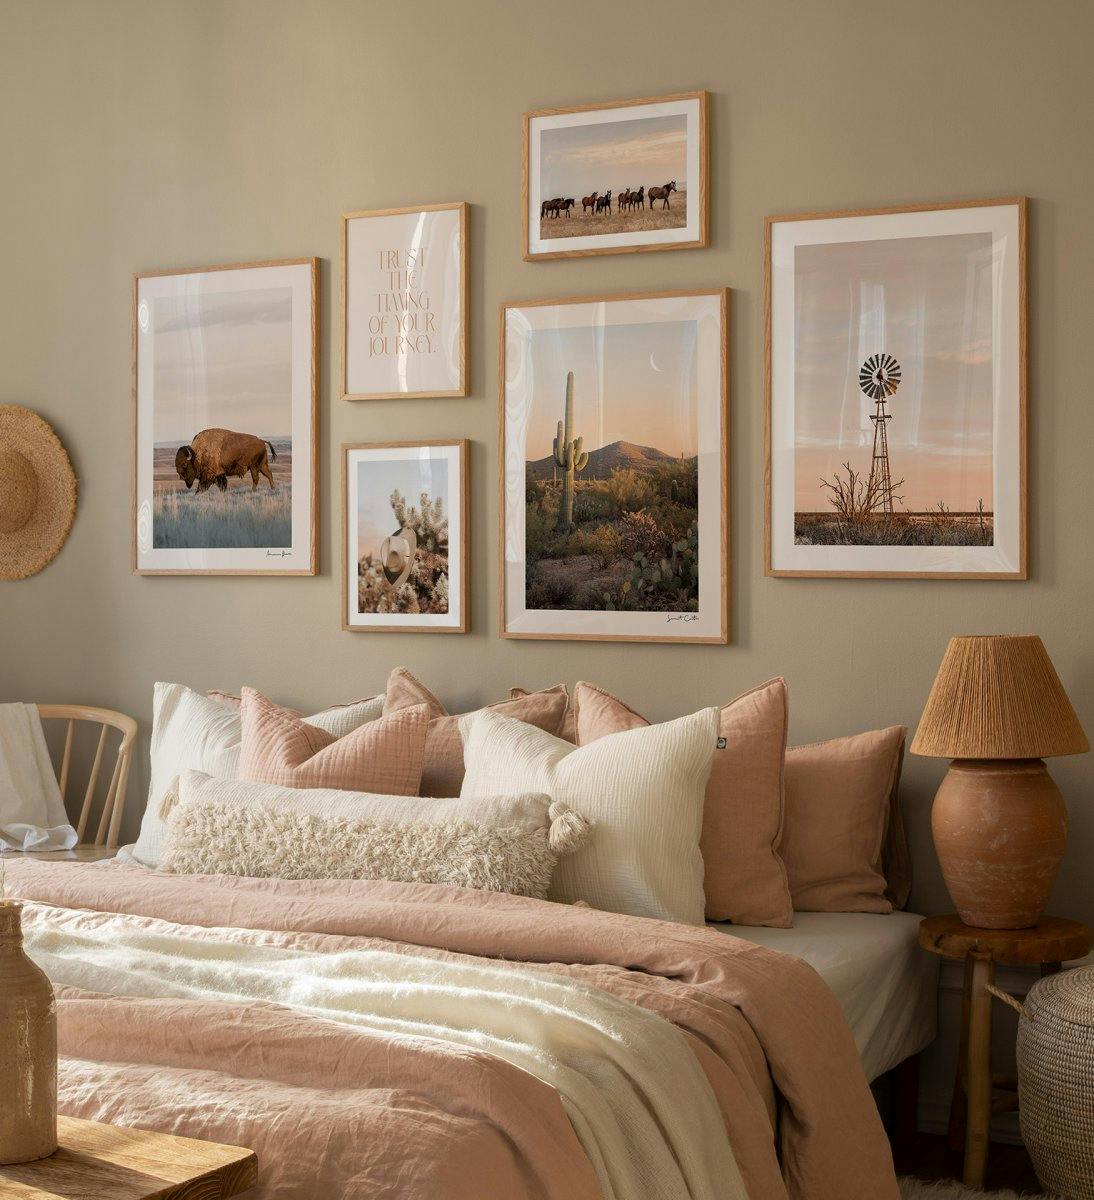 Mur galerie terre à terre avec imprimés naturels et photographies beiges avec cadres en chêne pour la chambre